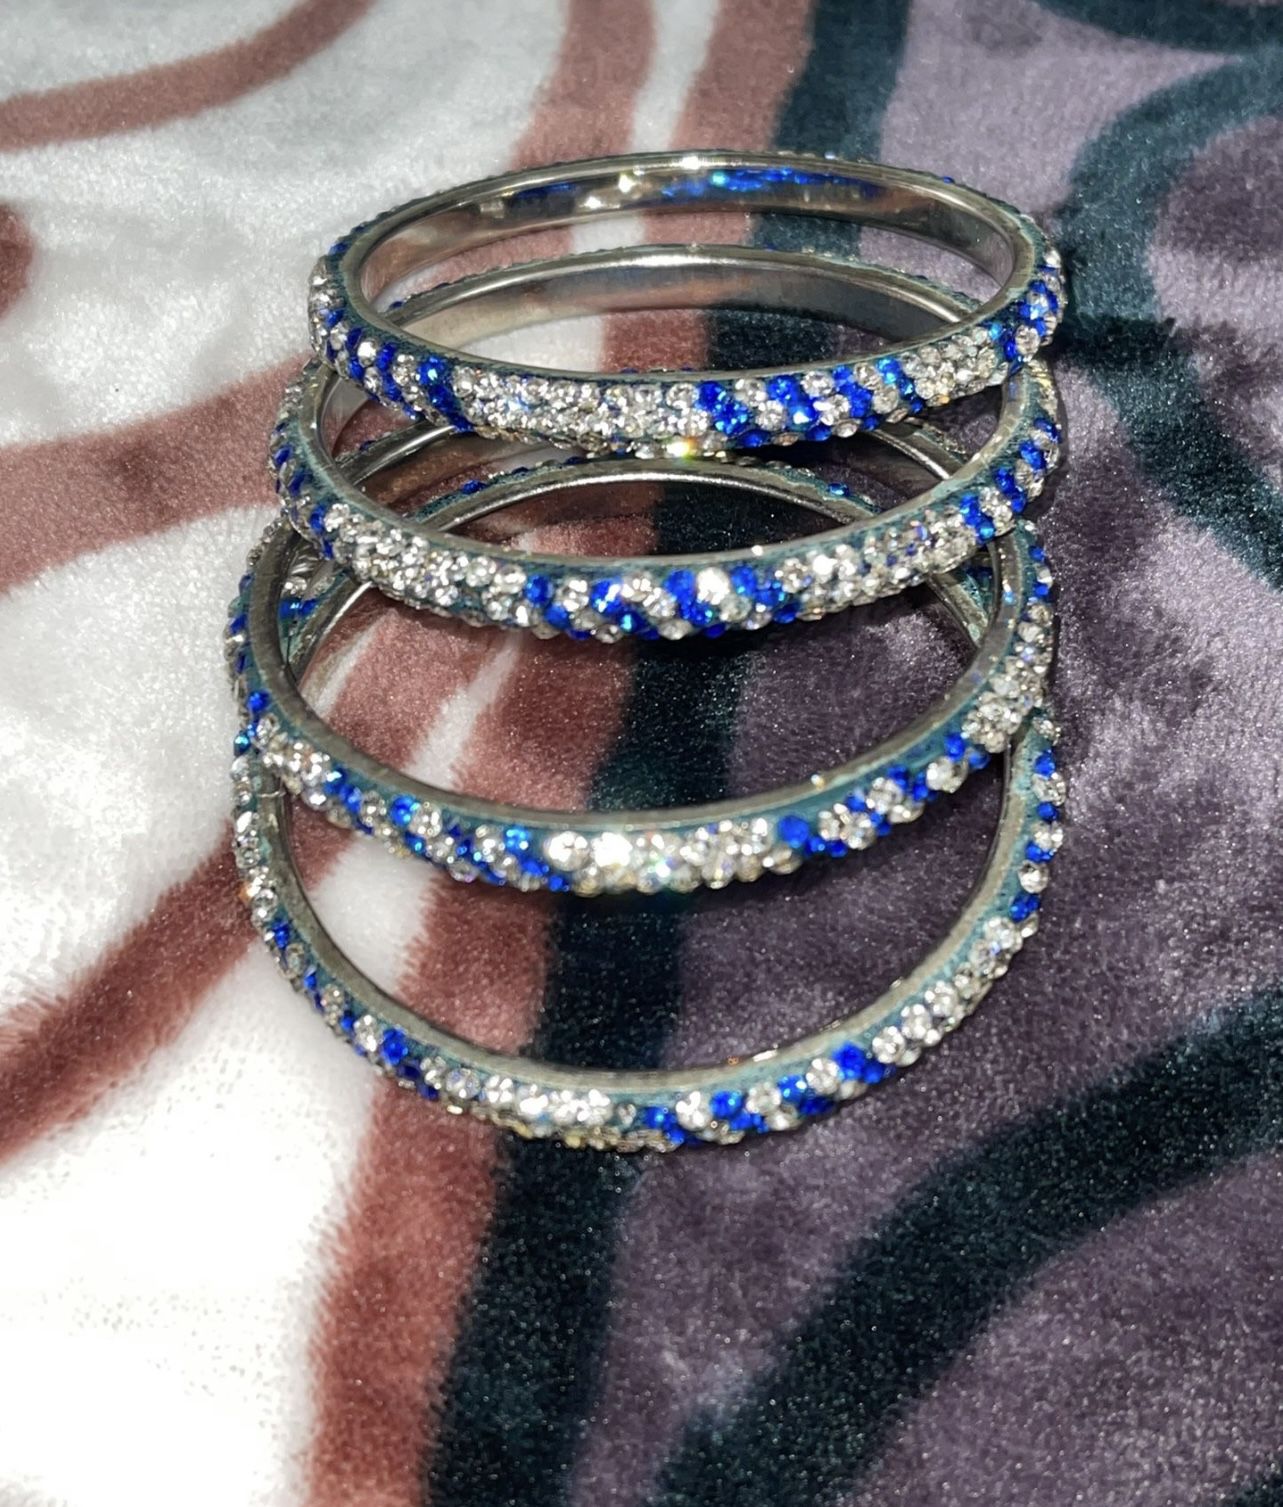 Pretty Blue And Silver Bangles $10